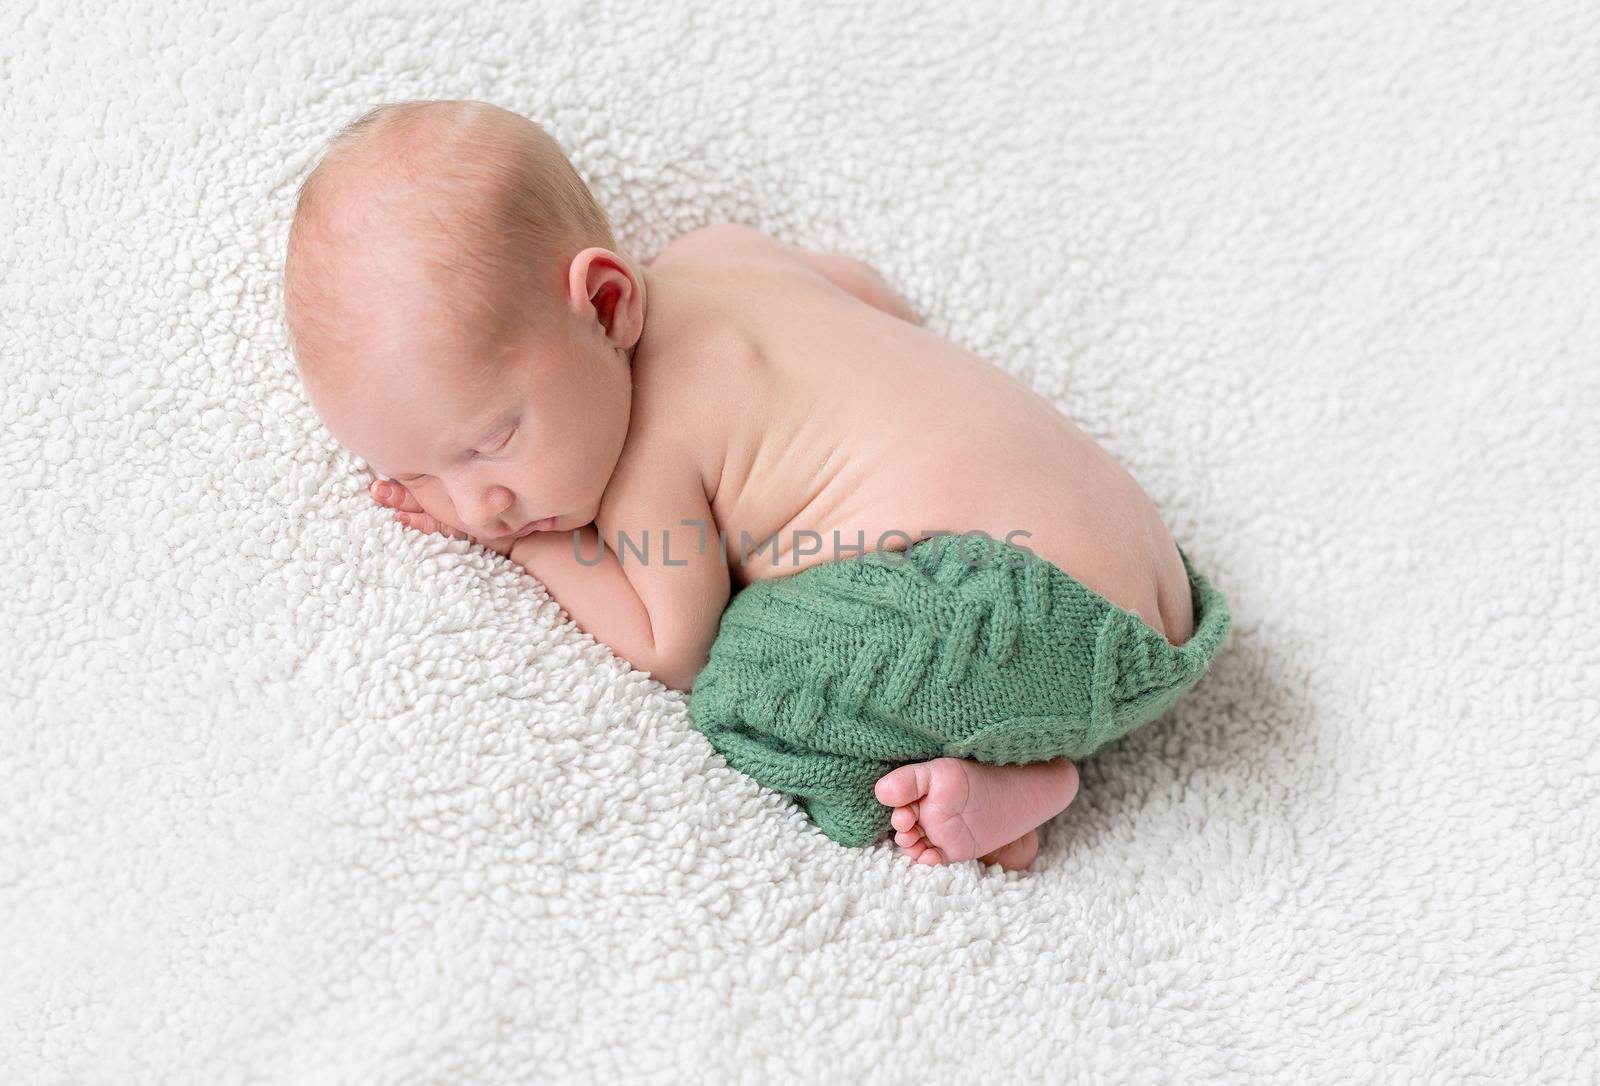 sweet sleeping baby on white blanket in green panties by tan4ikk1